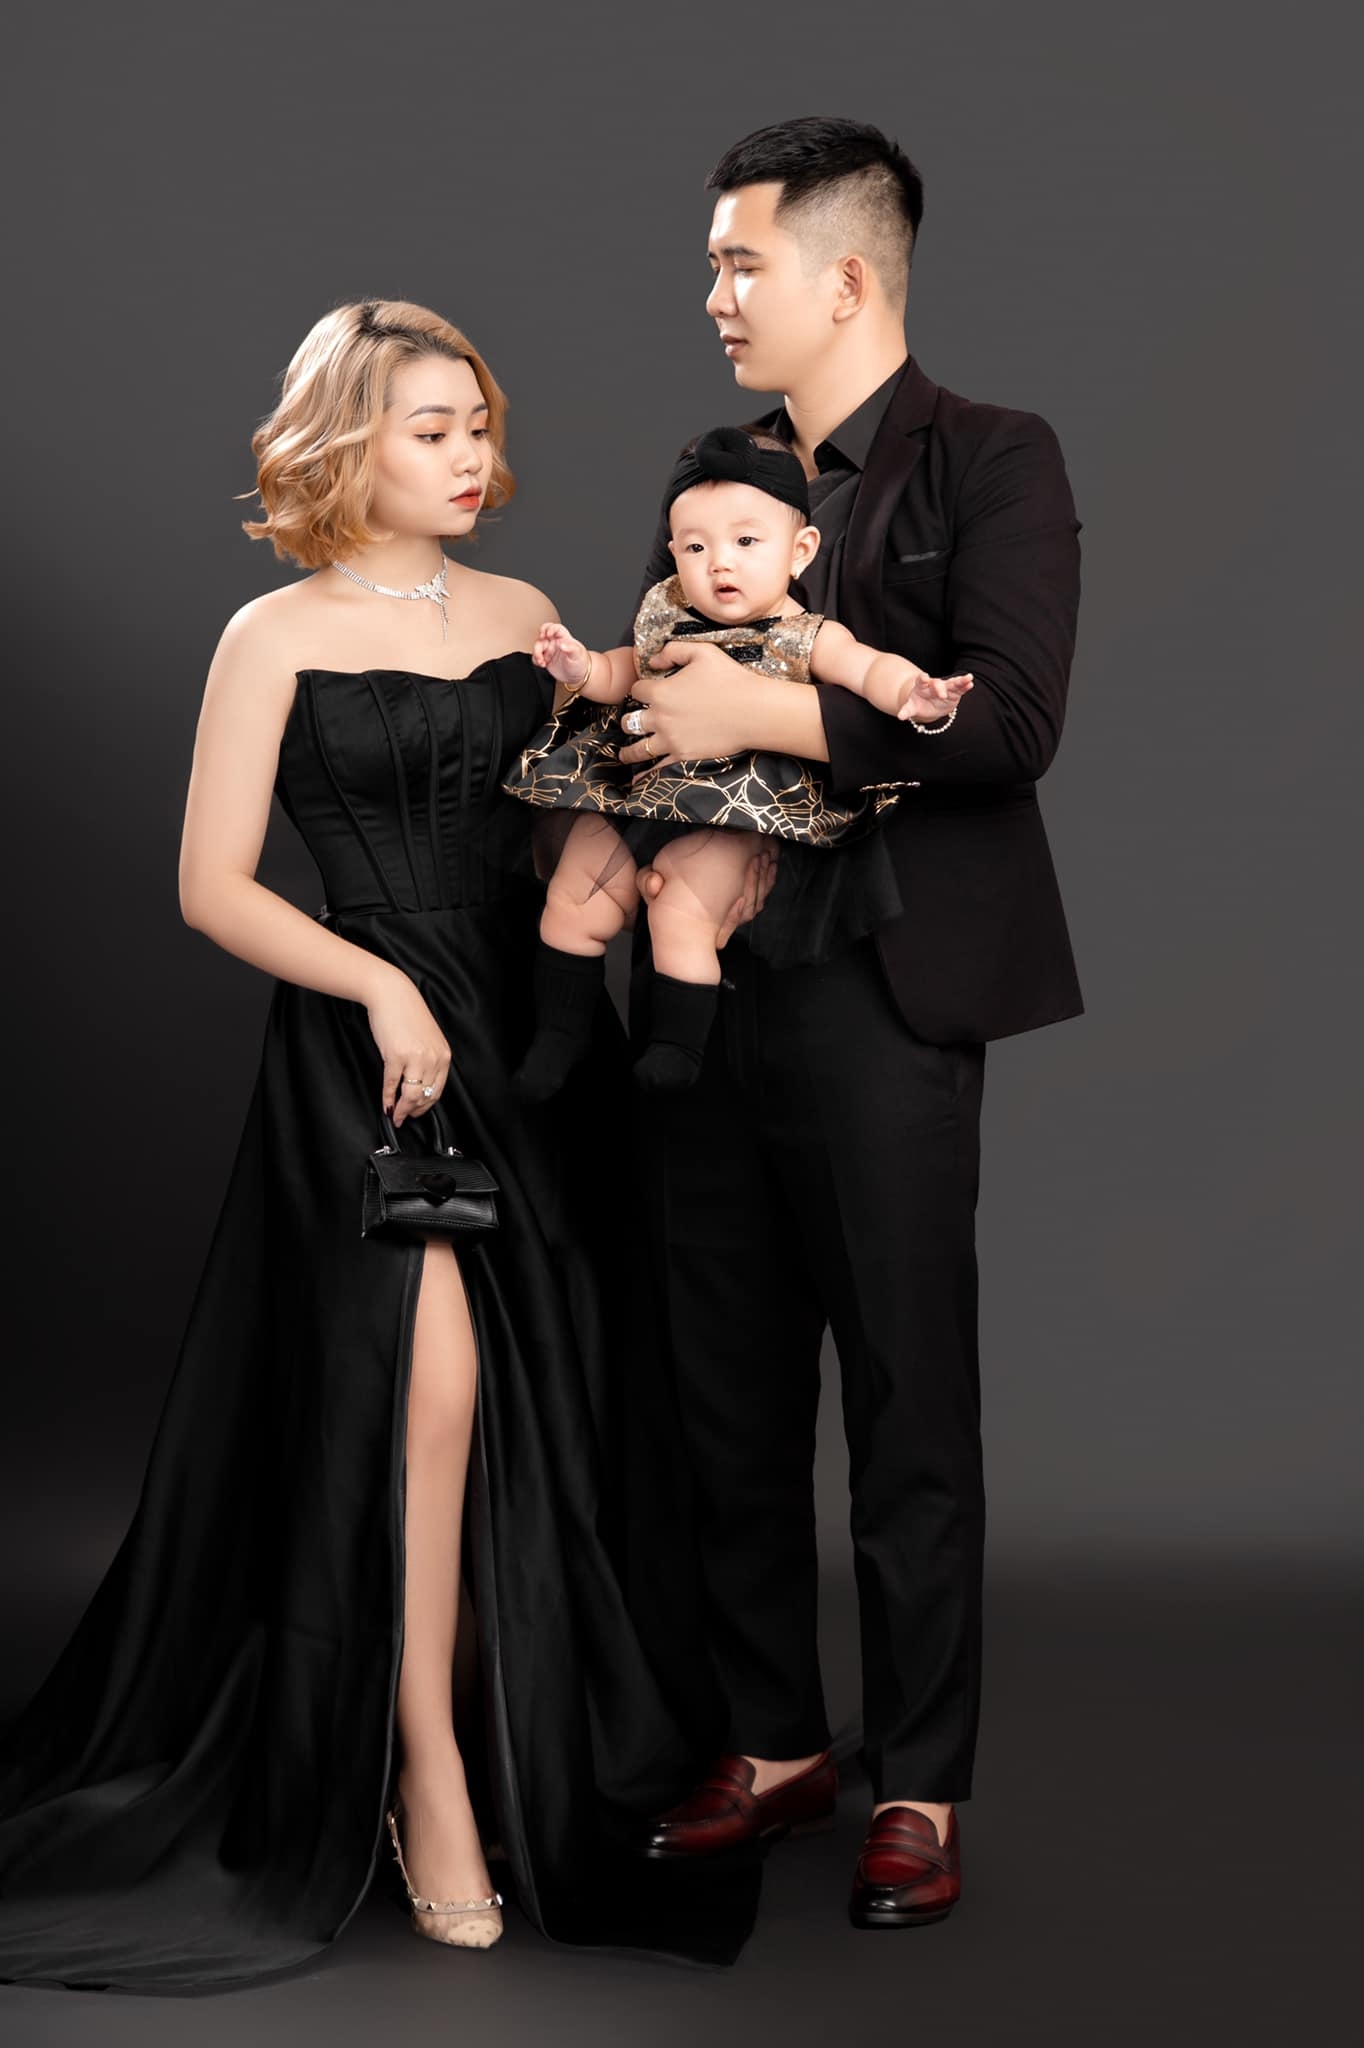 Anh gia dinh 2 1 - #4 Concept chụp ảnh gia đình trong studio đẹp- HThao Studio